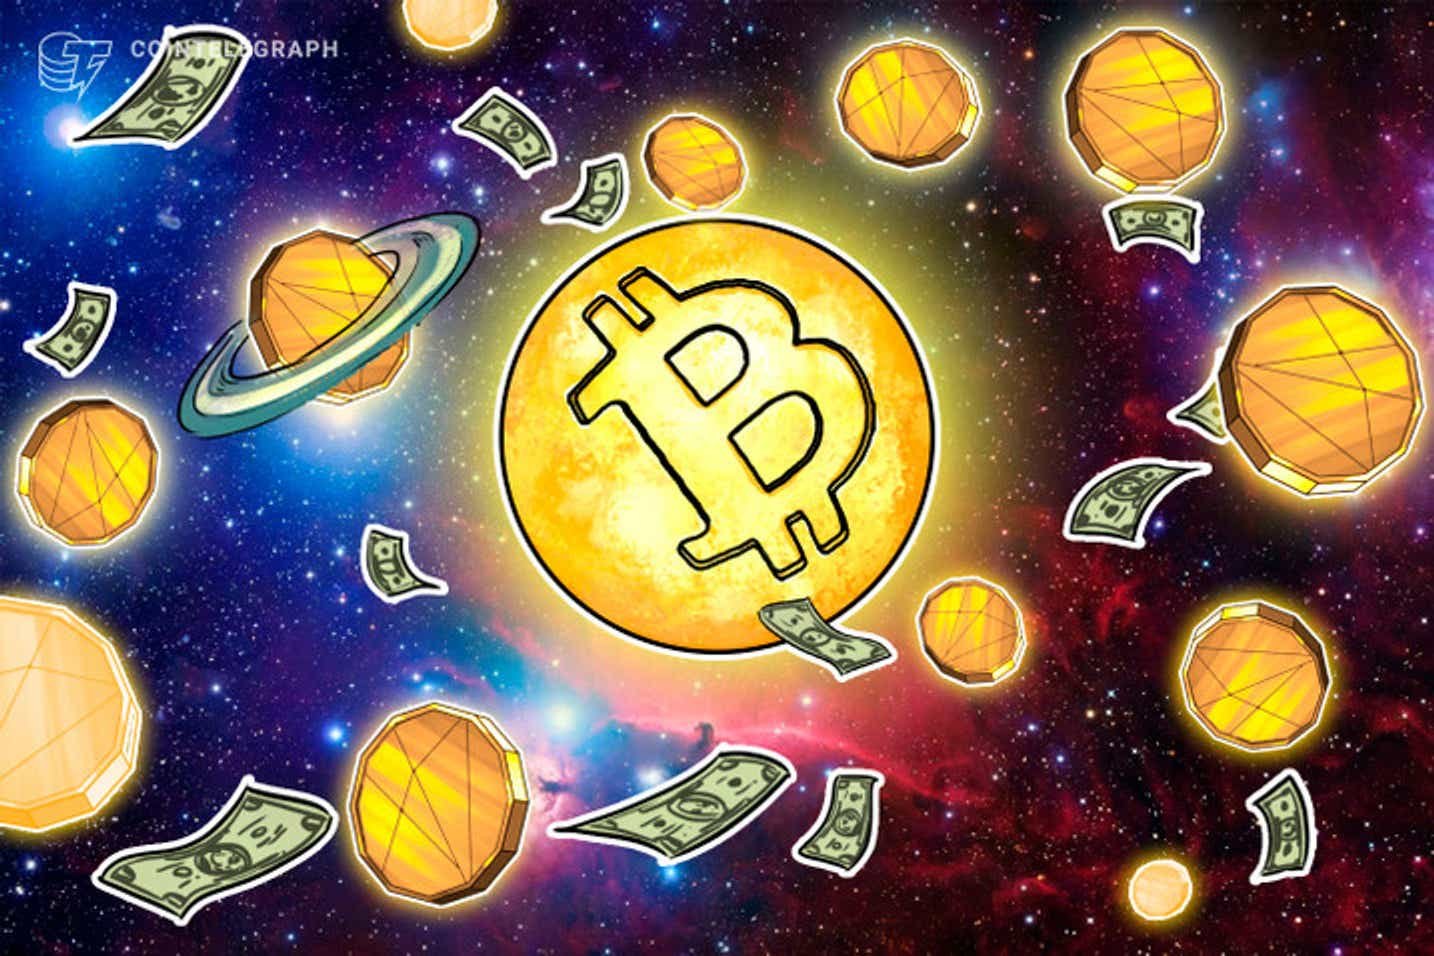  Bitcoin abre a semana em busca de nova máxima e analistas apontam US$ 89.000 como preço-alvo 